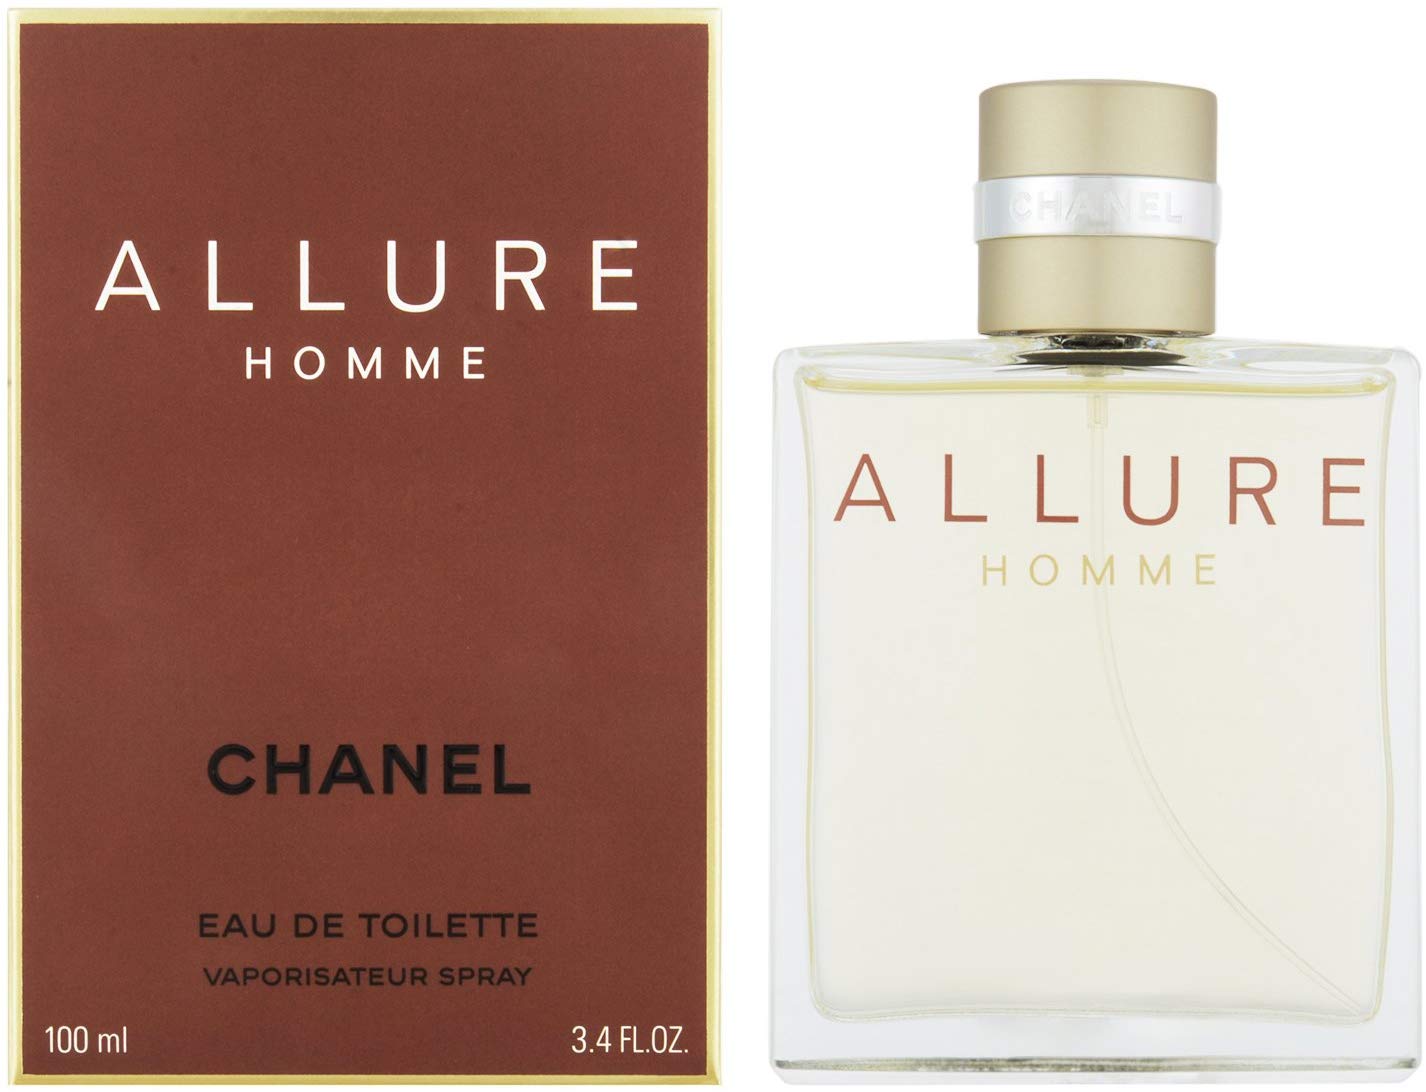 Allure Homme by Chanel Perfume for Men - Eau de Toilette, 100ml